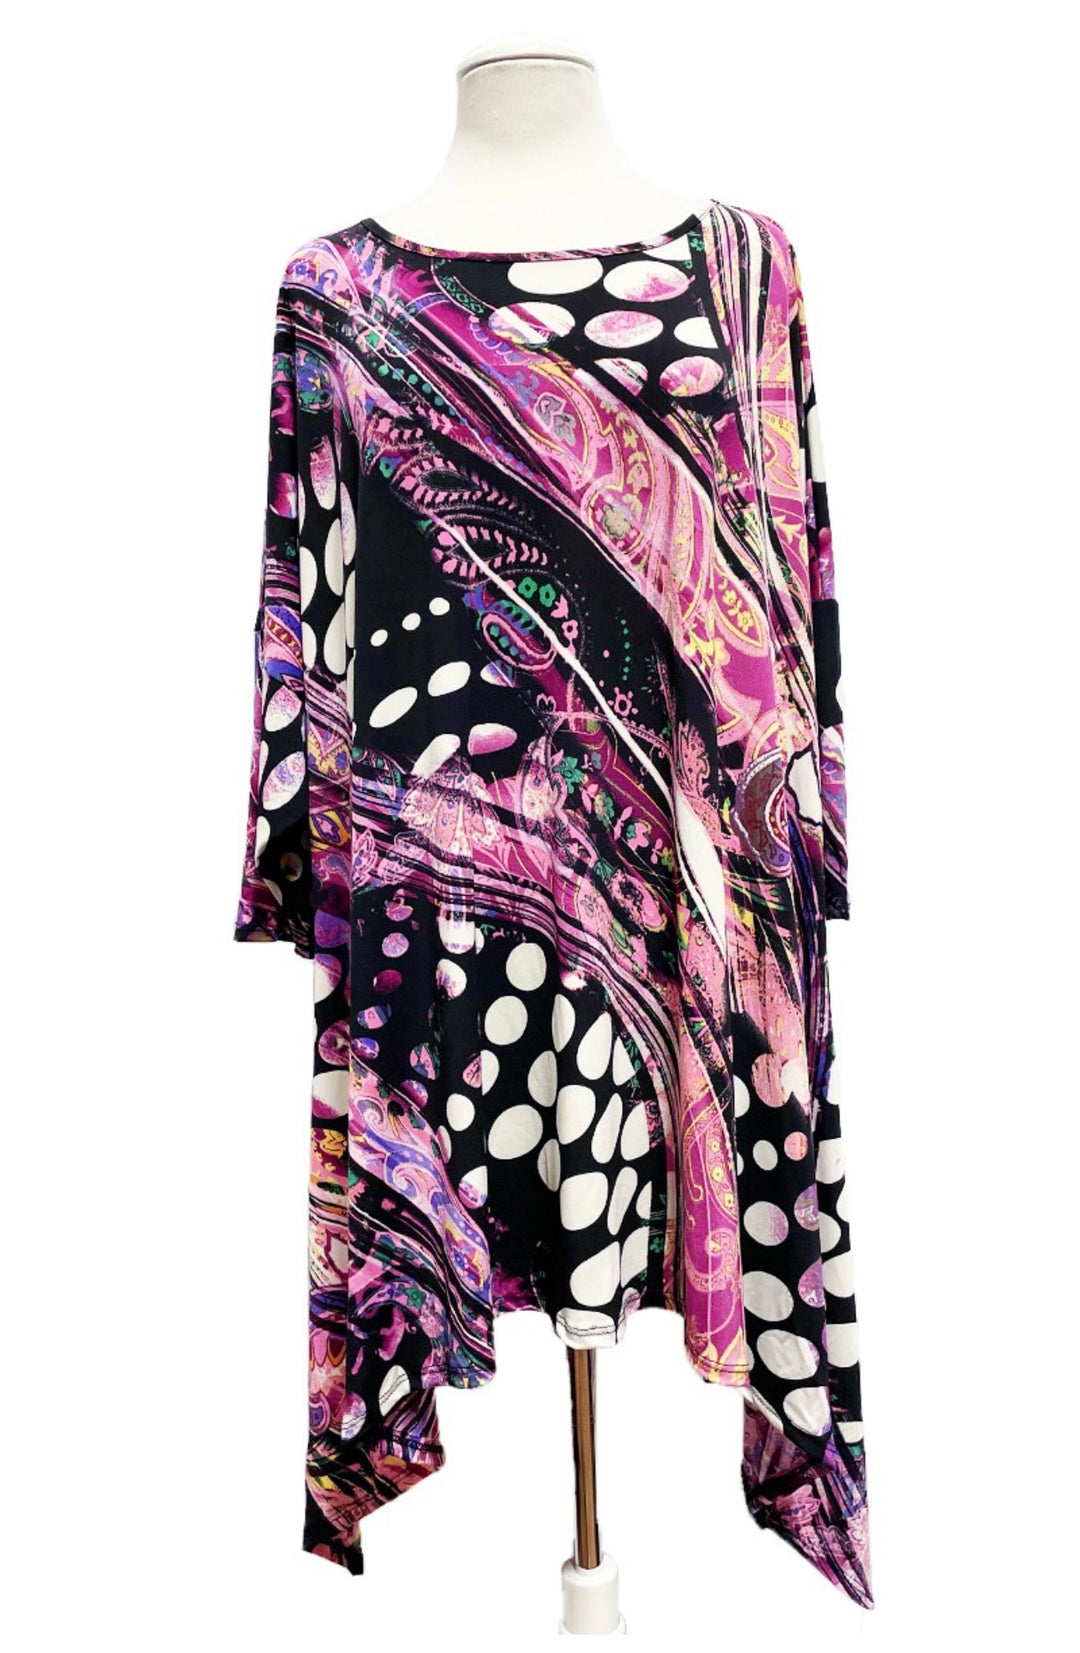 New Mia Polka Pink Purple Mix Print Side Drape Top Plus Size 3x 4x 5x